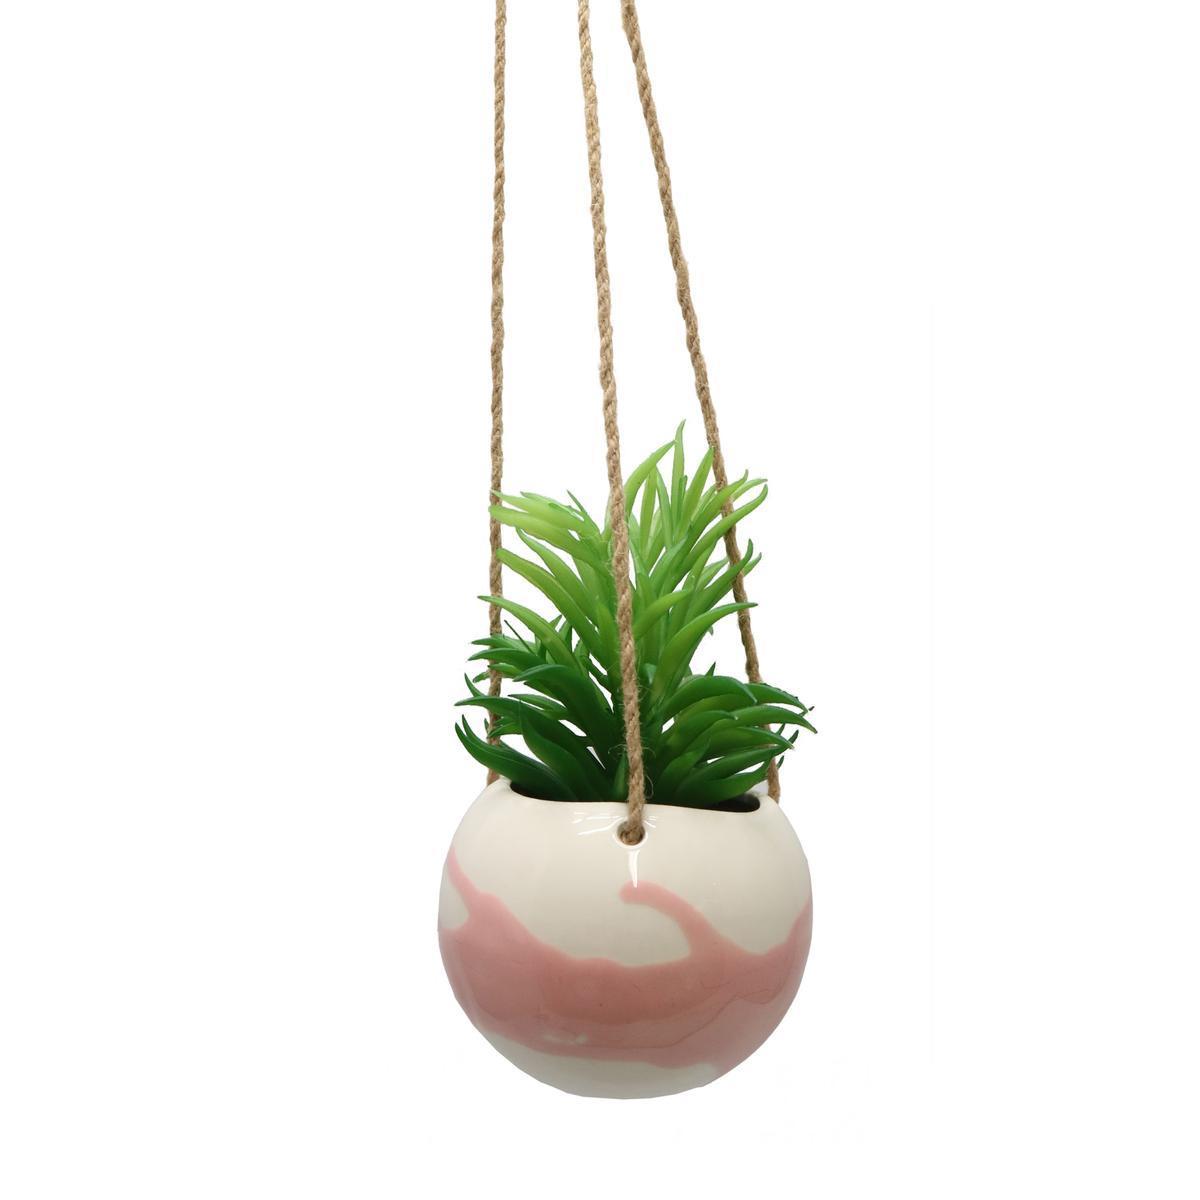 Suspension succulente en pot décoré - H 16 cm - Vert